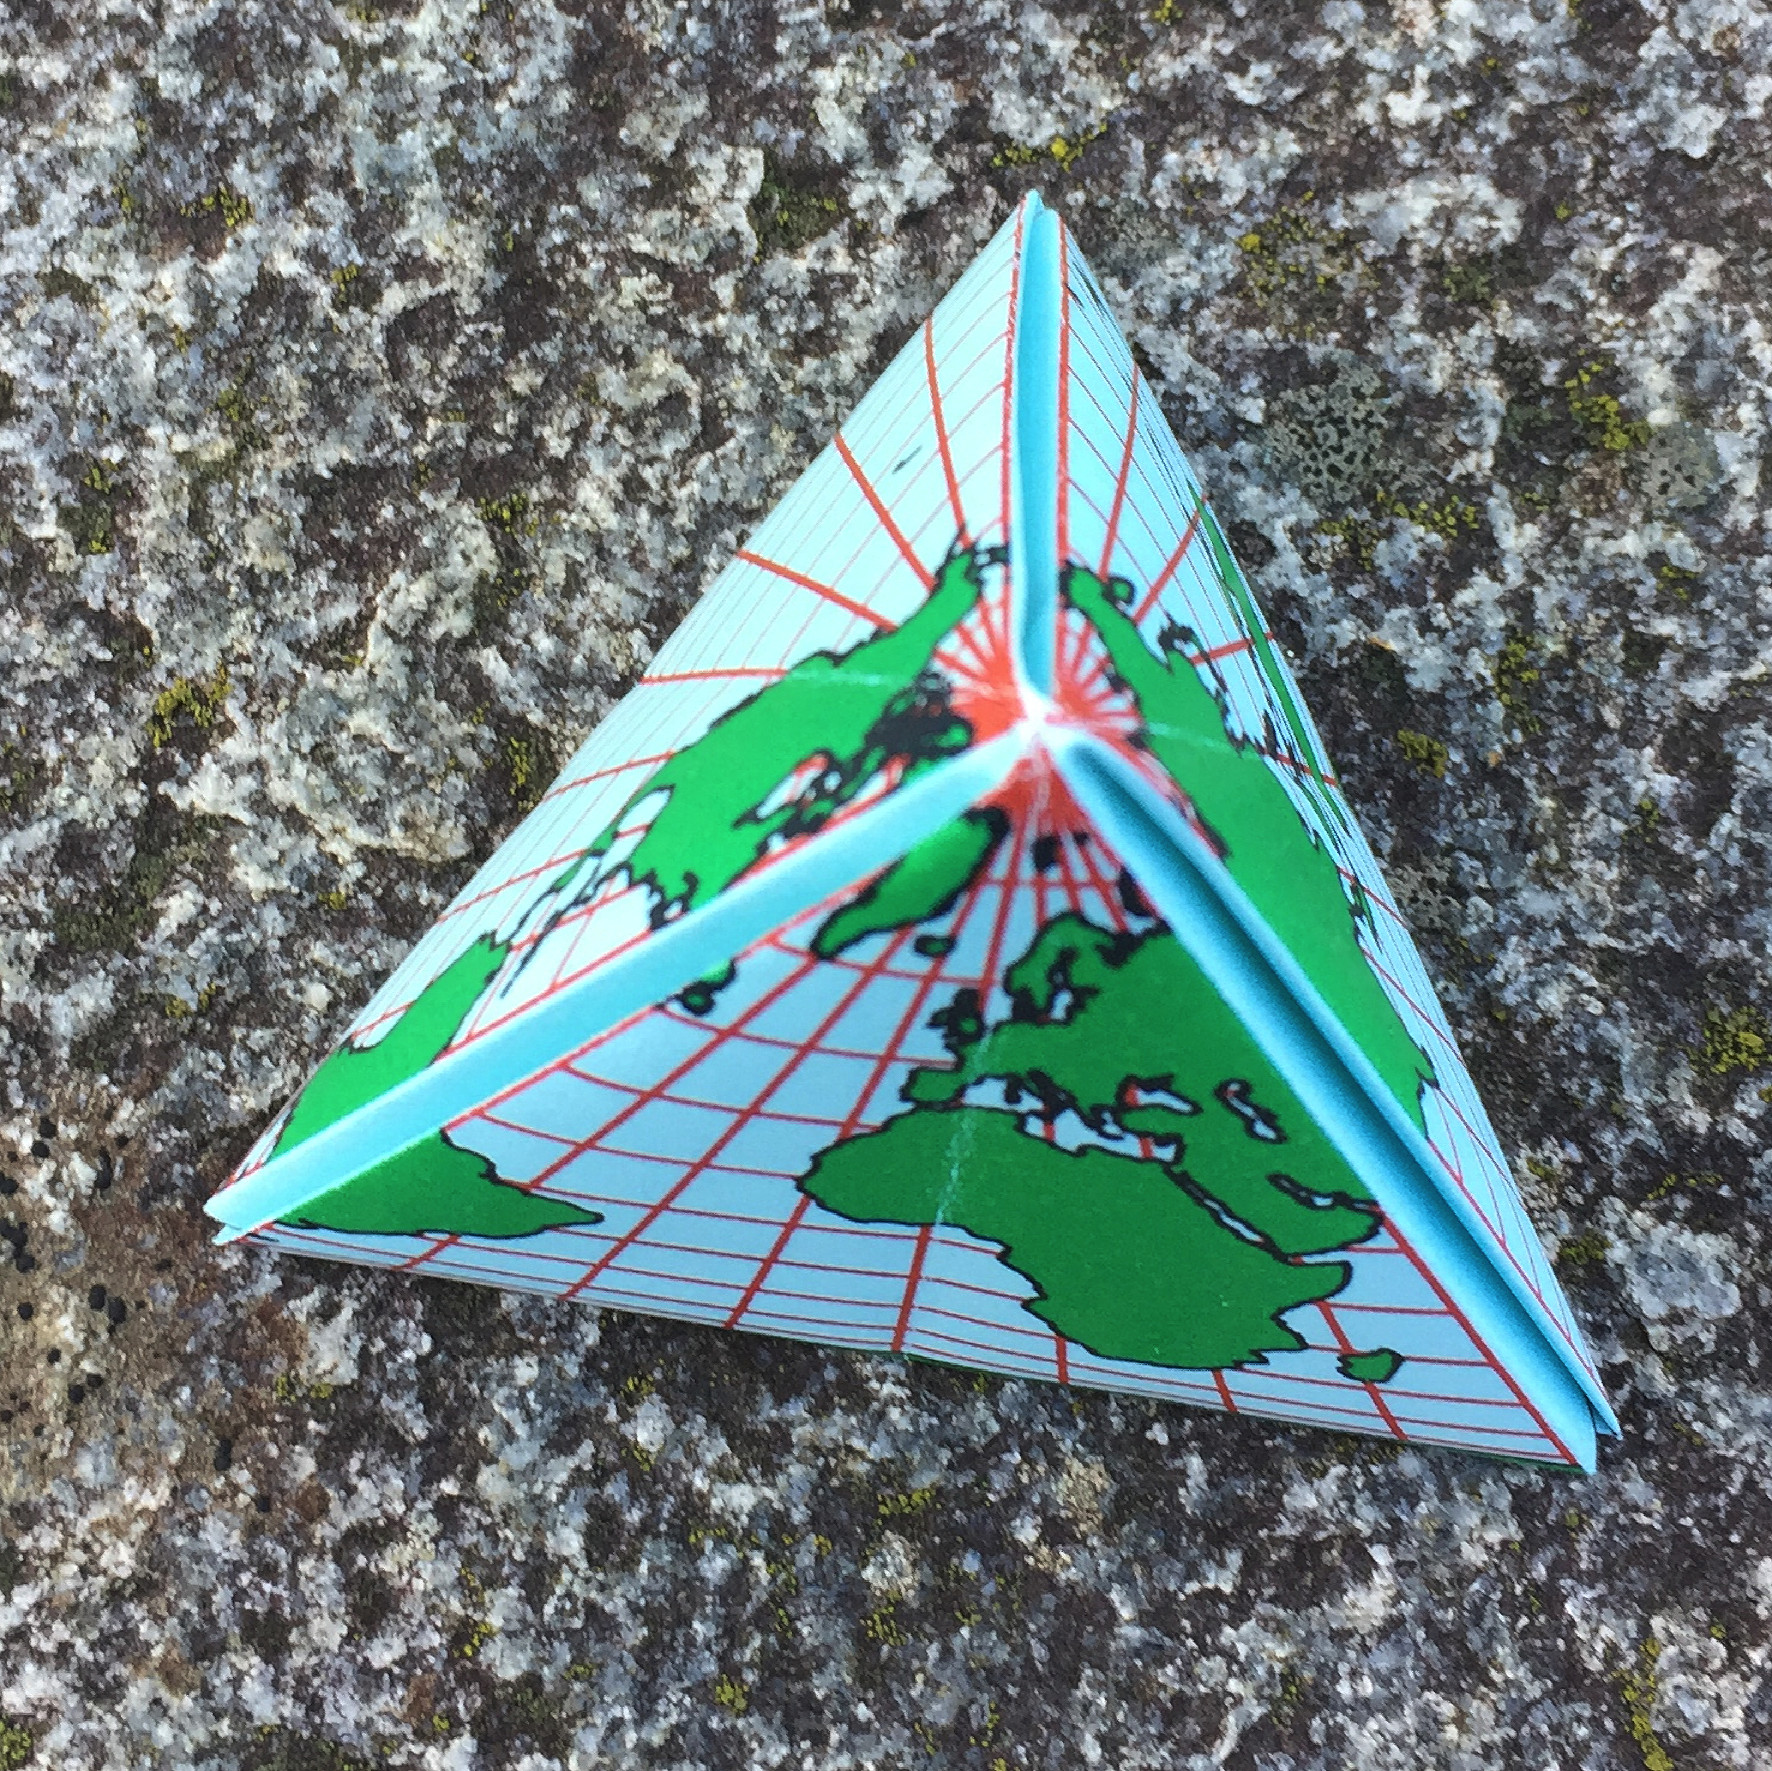 Ein Bild, das Dreieck, Gelände, draußen enthält.

Automatisch generierte Beschreibung